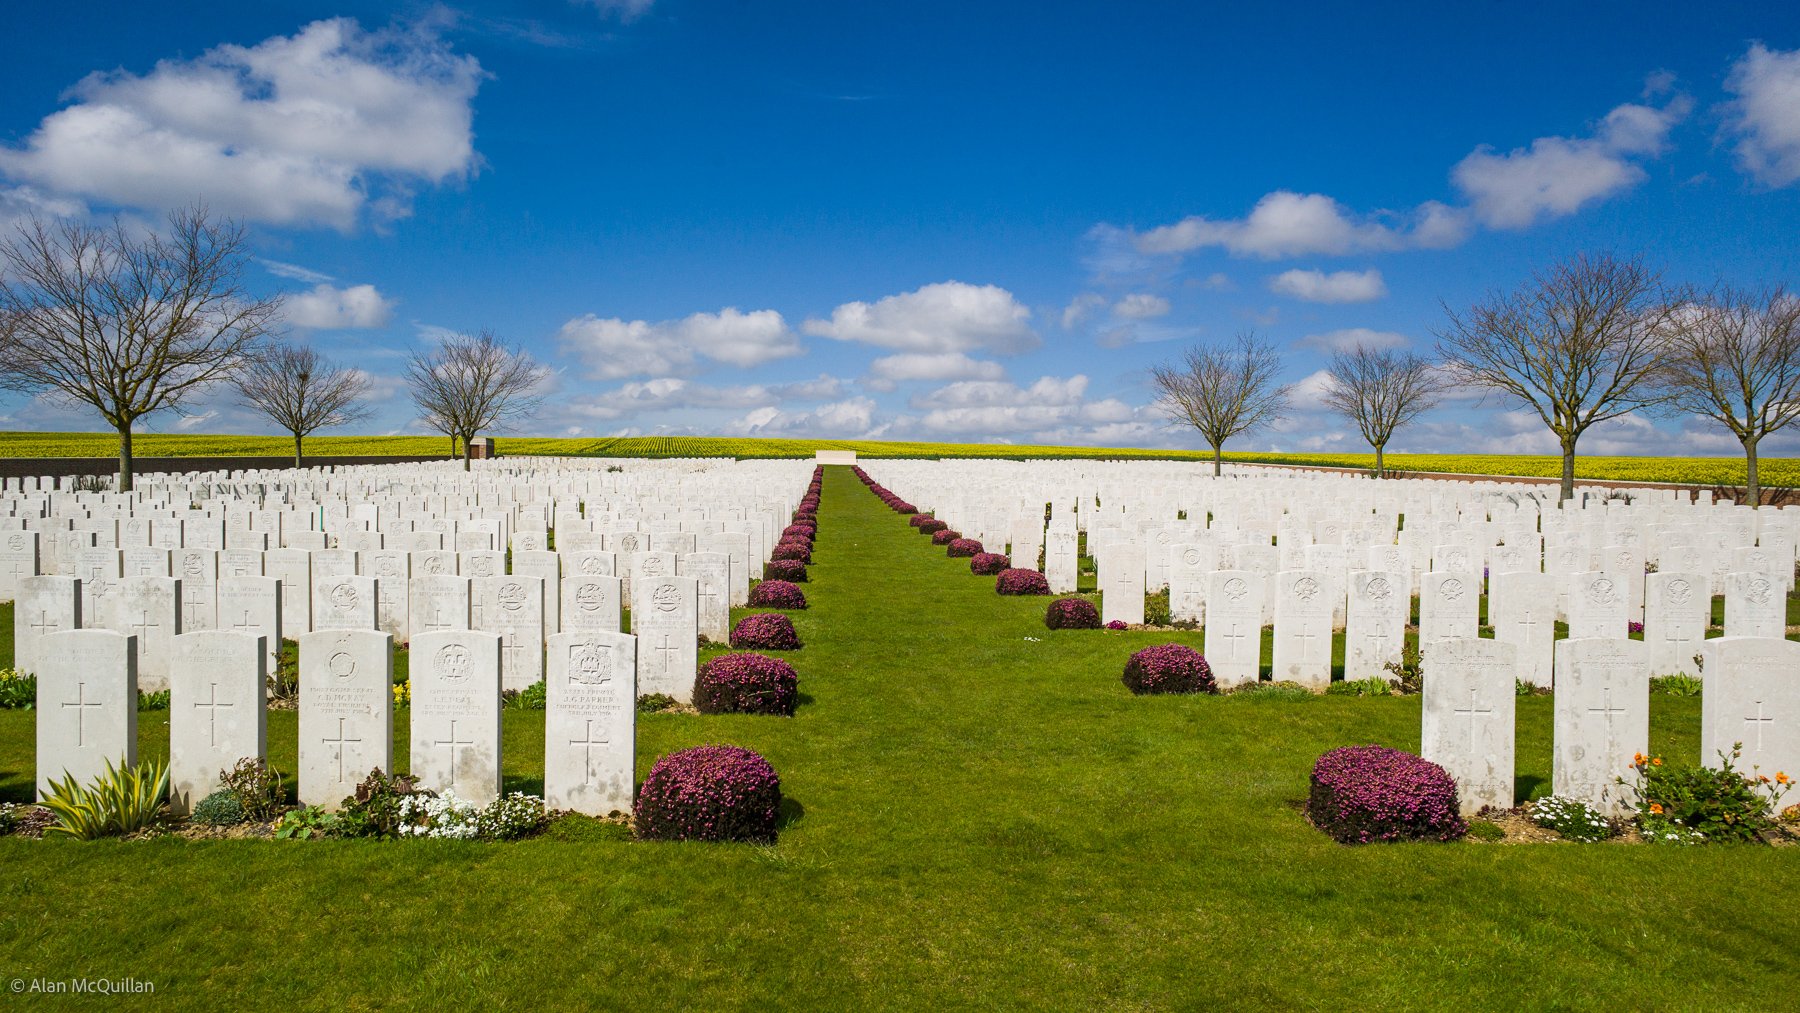 Ovillers-la-Boisselle cemetary, Somme WW1 battlefield, France